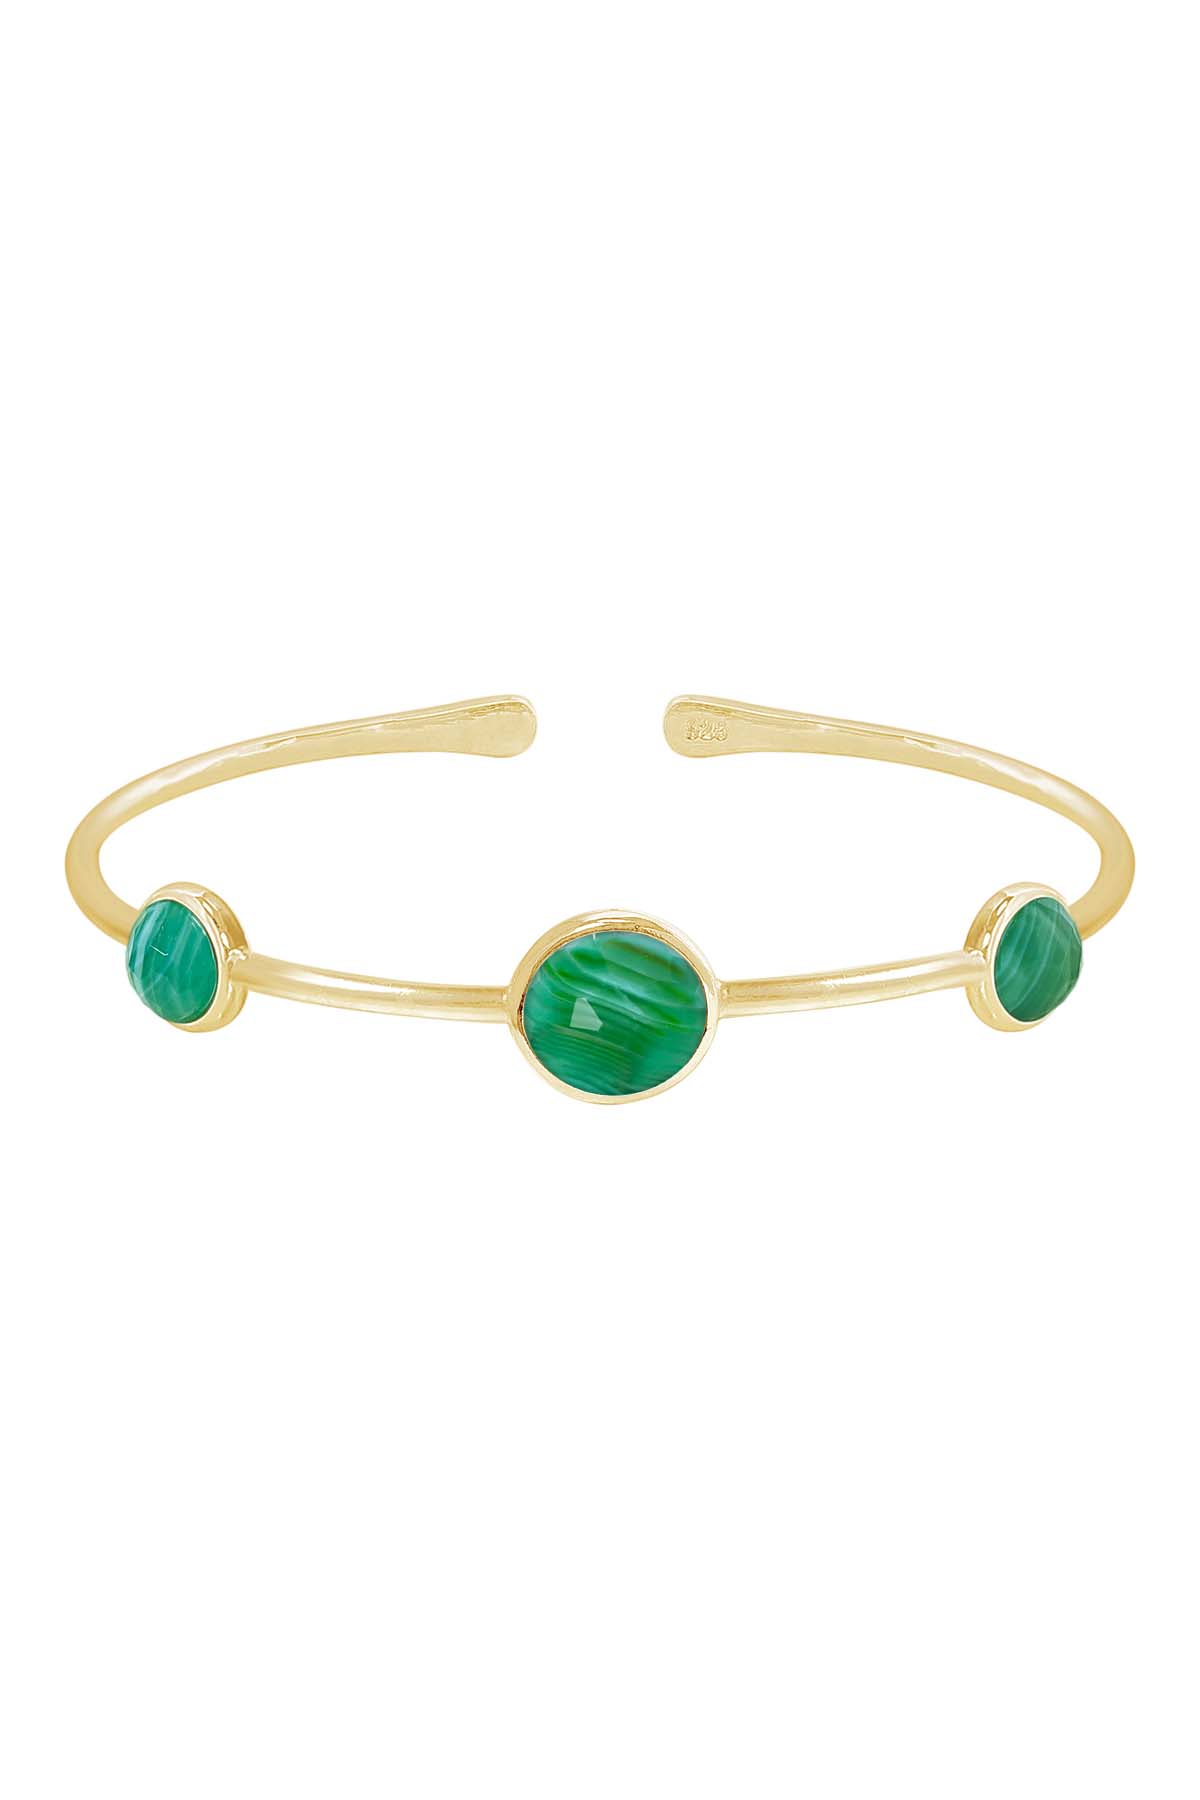 Green Lace Agate Cuff Bracelet In 14k Gold - GF